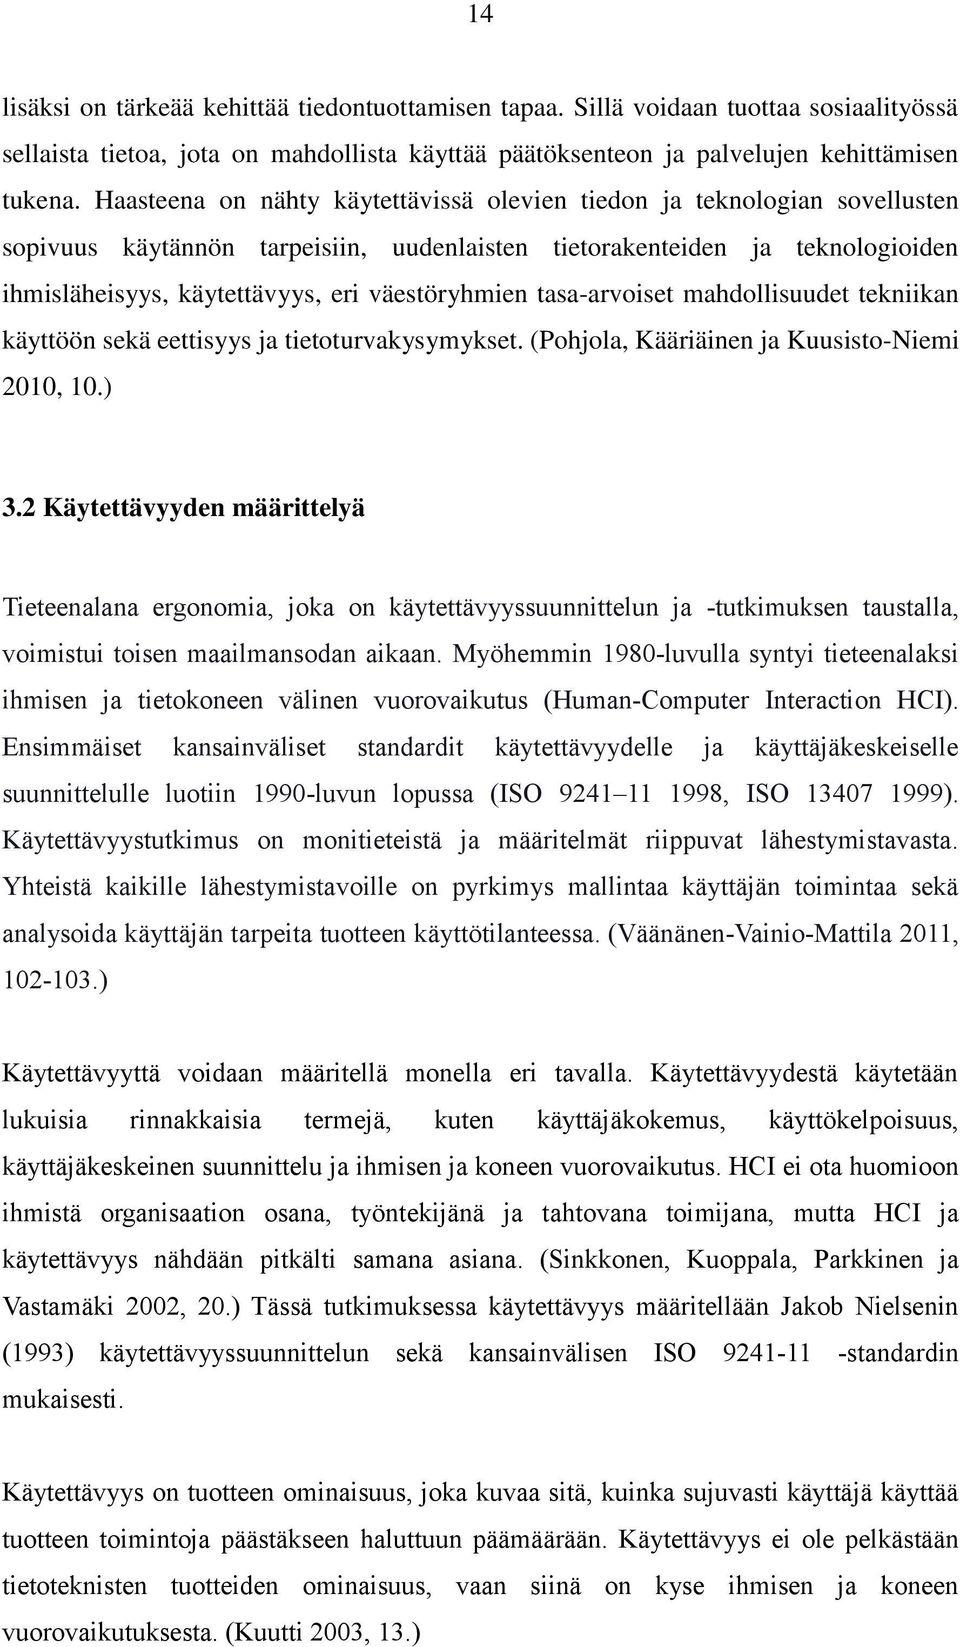 väestöryhmien tasa-arvoiset mahdollisuudet tekniikan käyttöön sekä eettisyys ja tietoturvakysymykset. (Pohjola, Kääriäinen ja Kuusisto-Niemi 2010, 10.) 3.